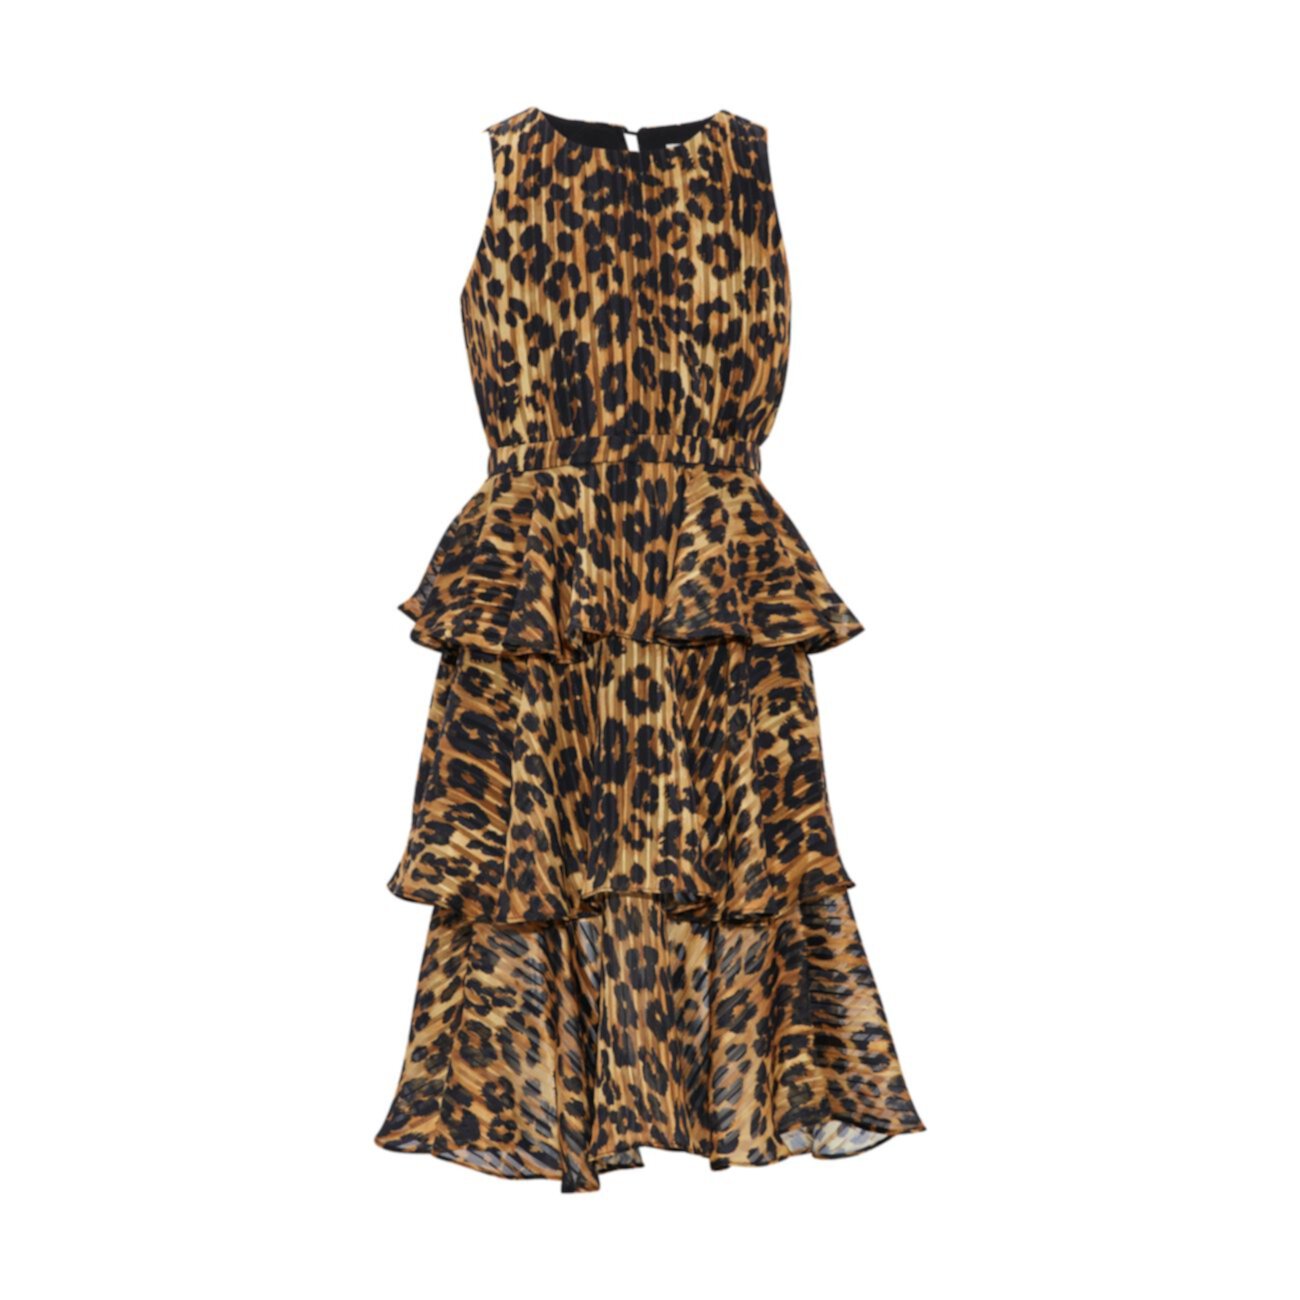 Многослойное макси-платье с принтом гепарда Emiliana для девочек Milly Minis